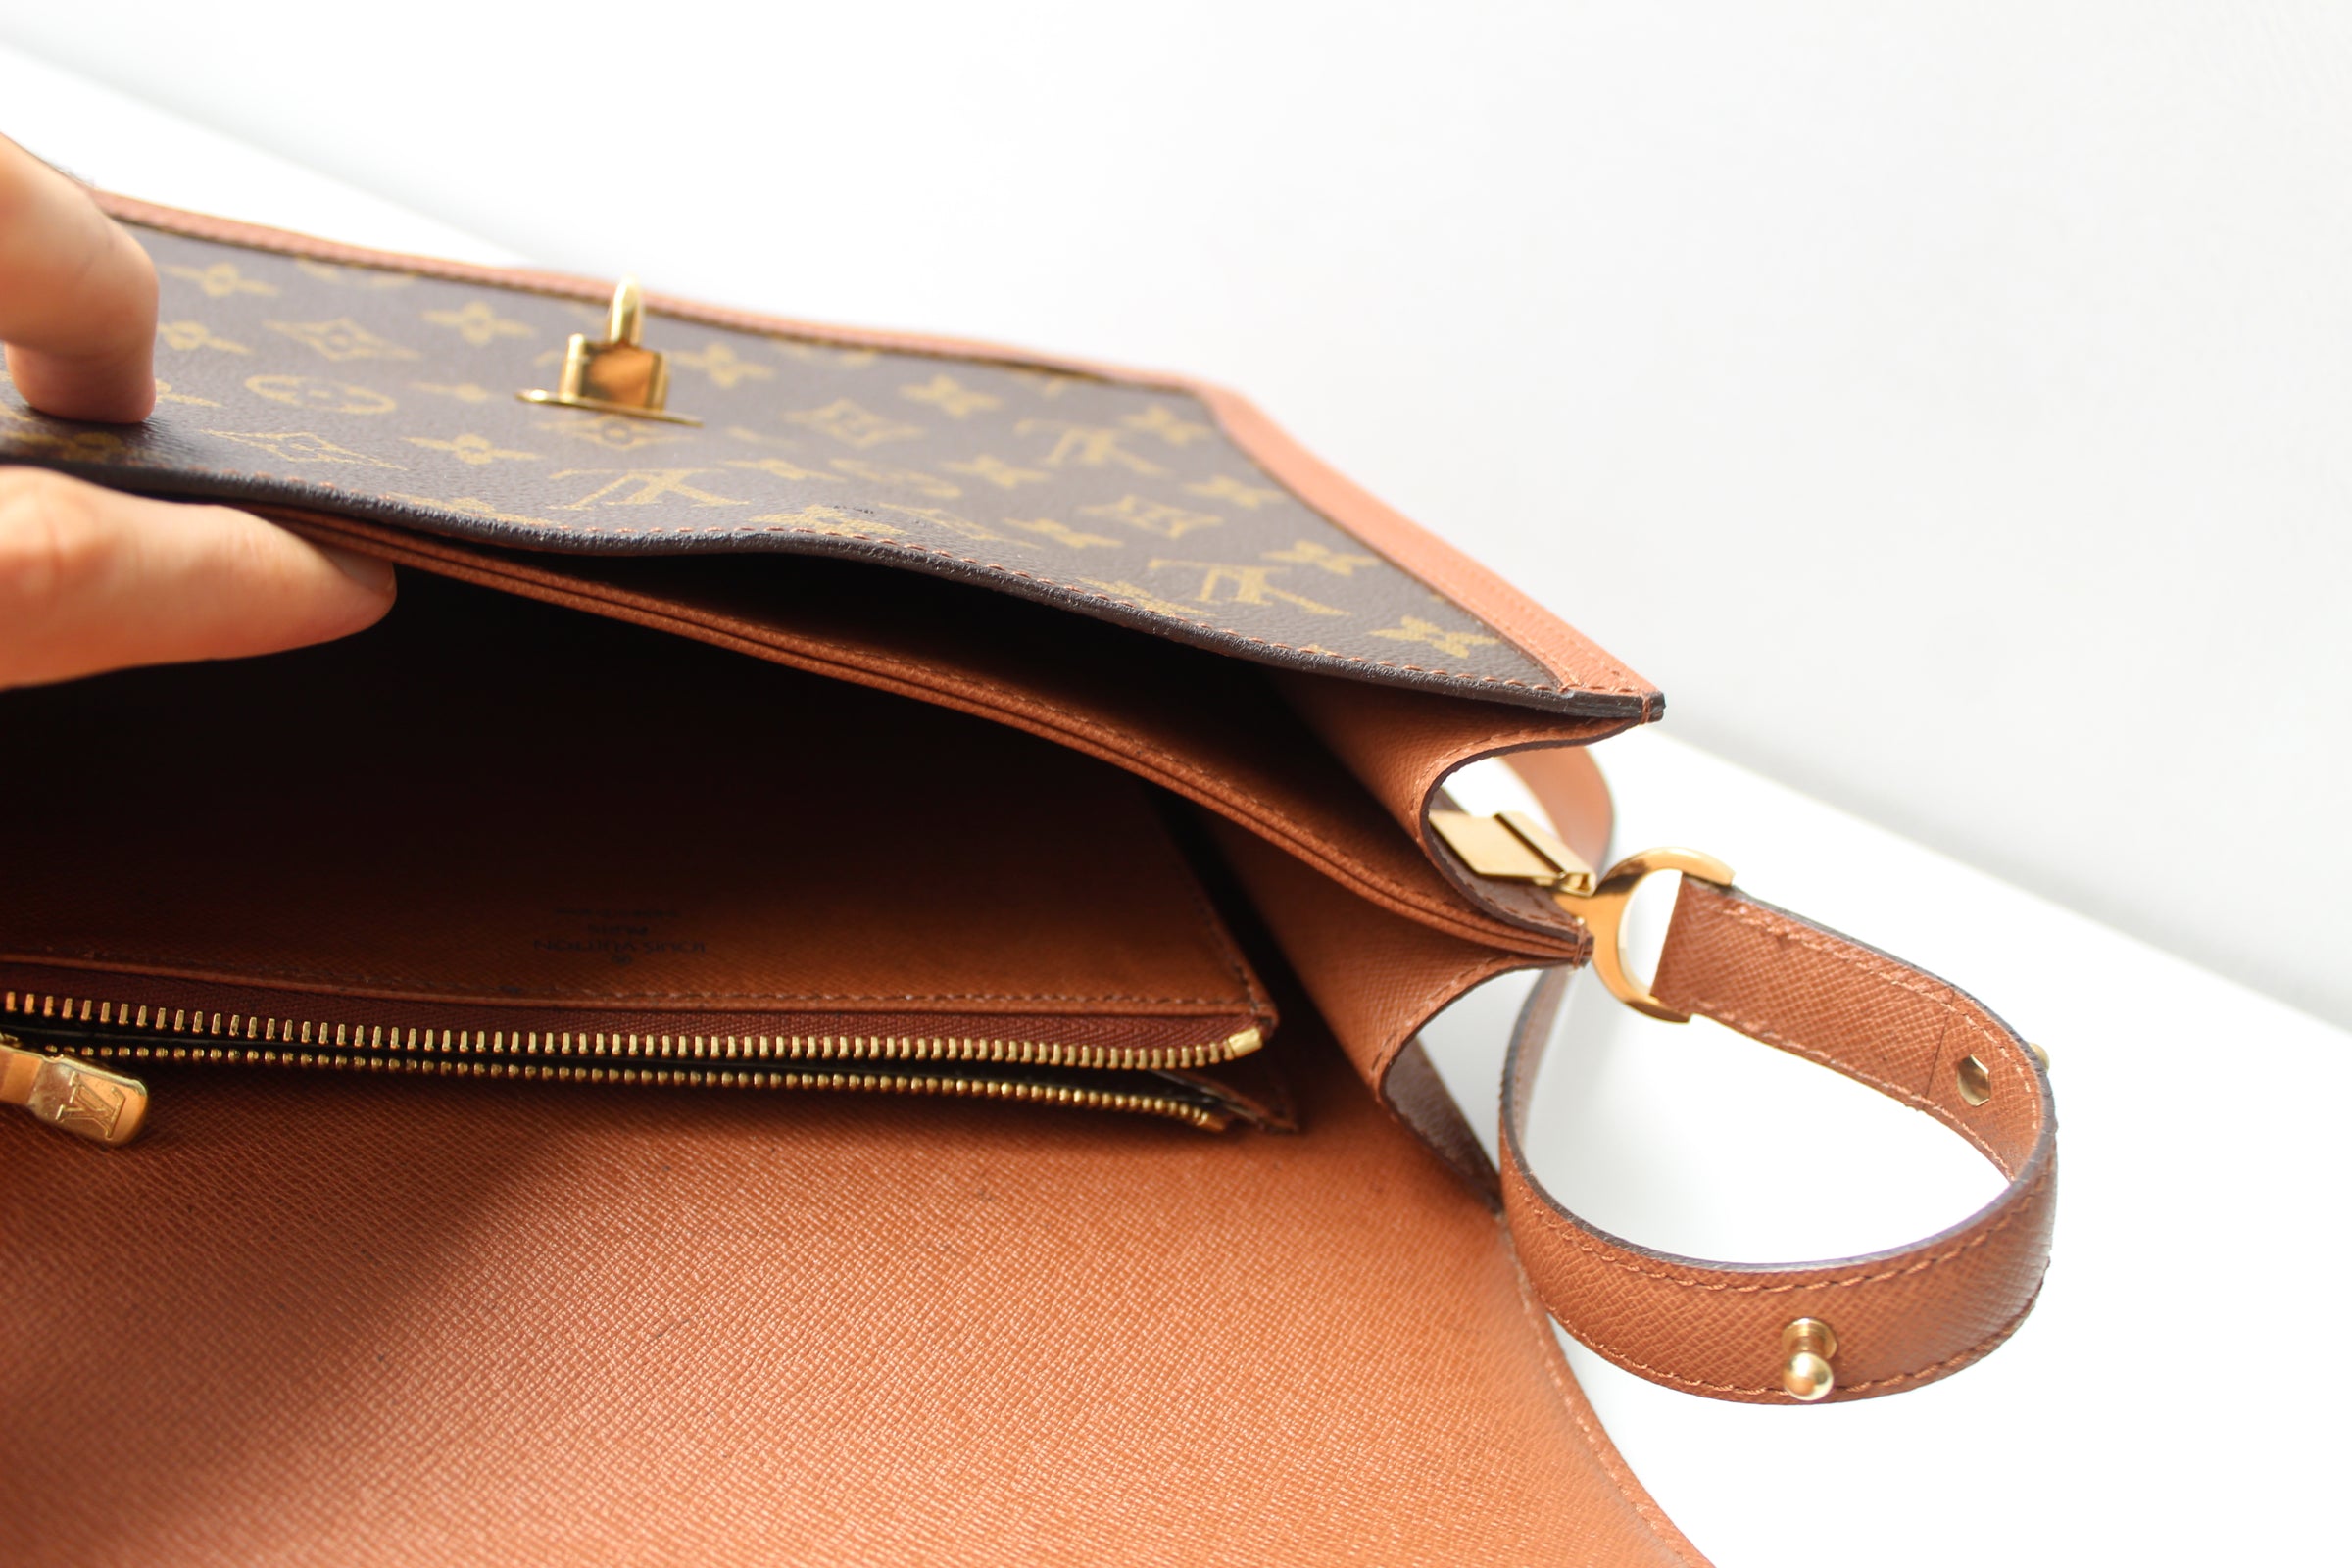 Louis Vuitton Vintage Raspail Shoulder bag 🎉 SALE!! Limited time